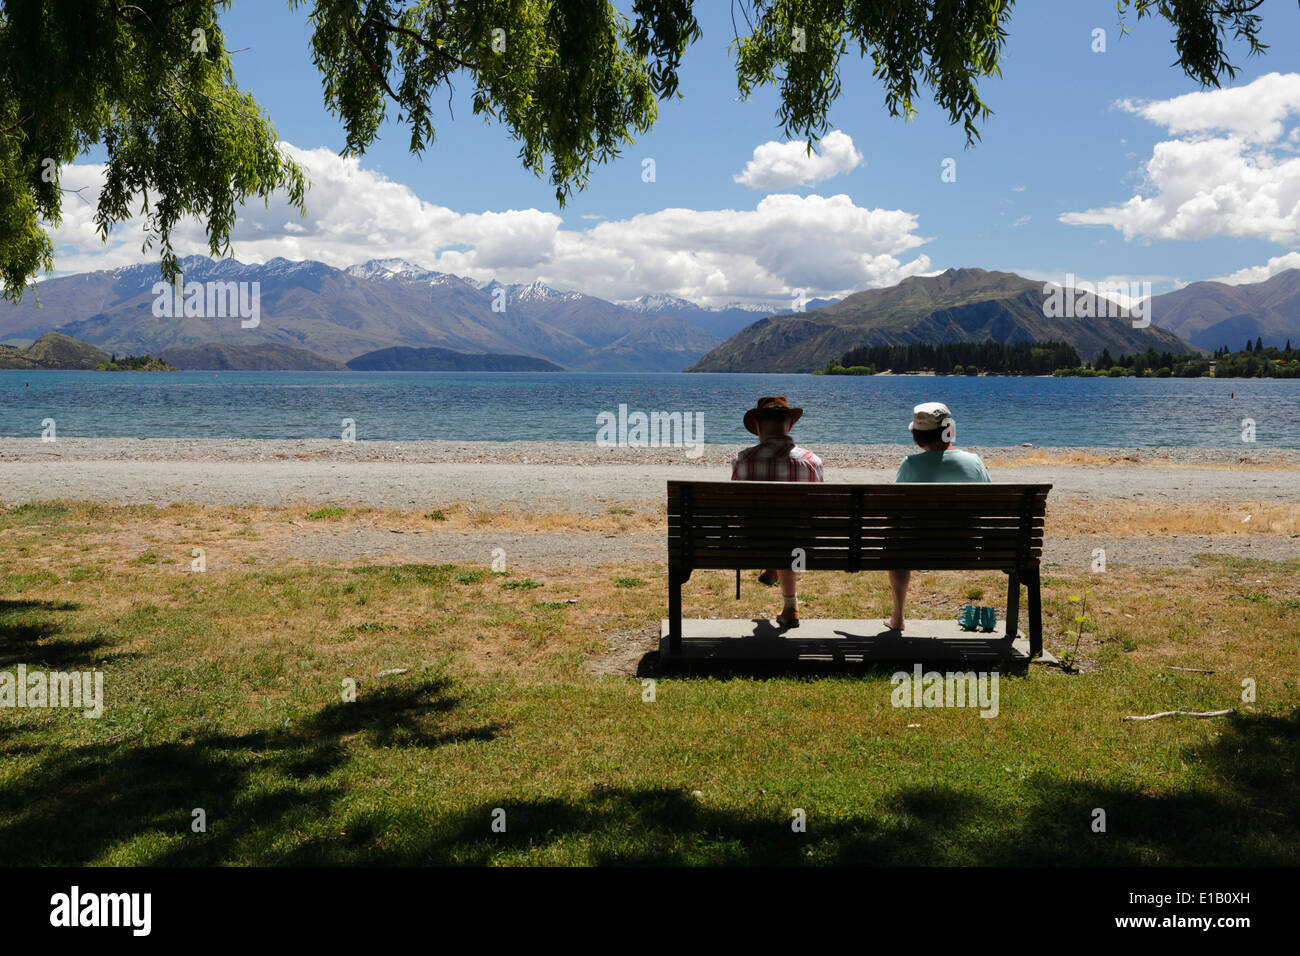 Par sentado en la banqueta junto al lago, el Lago Wanaka, Wanaka, Otago, Isla del Sur, Nueva Zelanda, Pacífico Sur Foto de stock